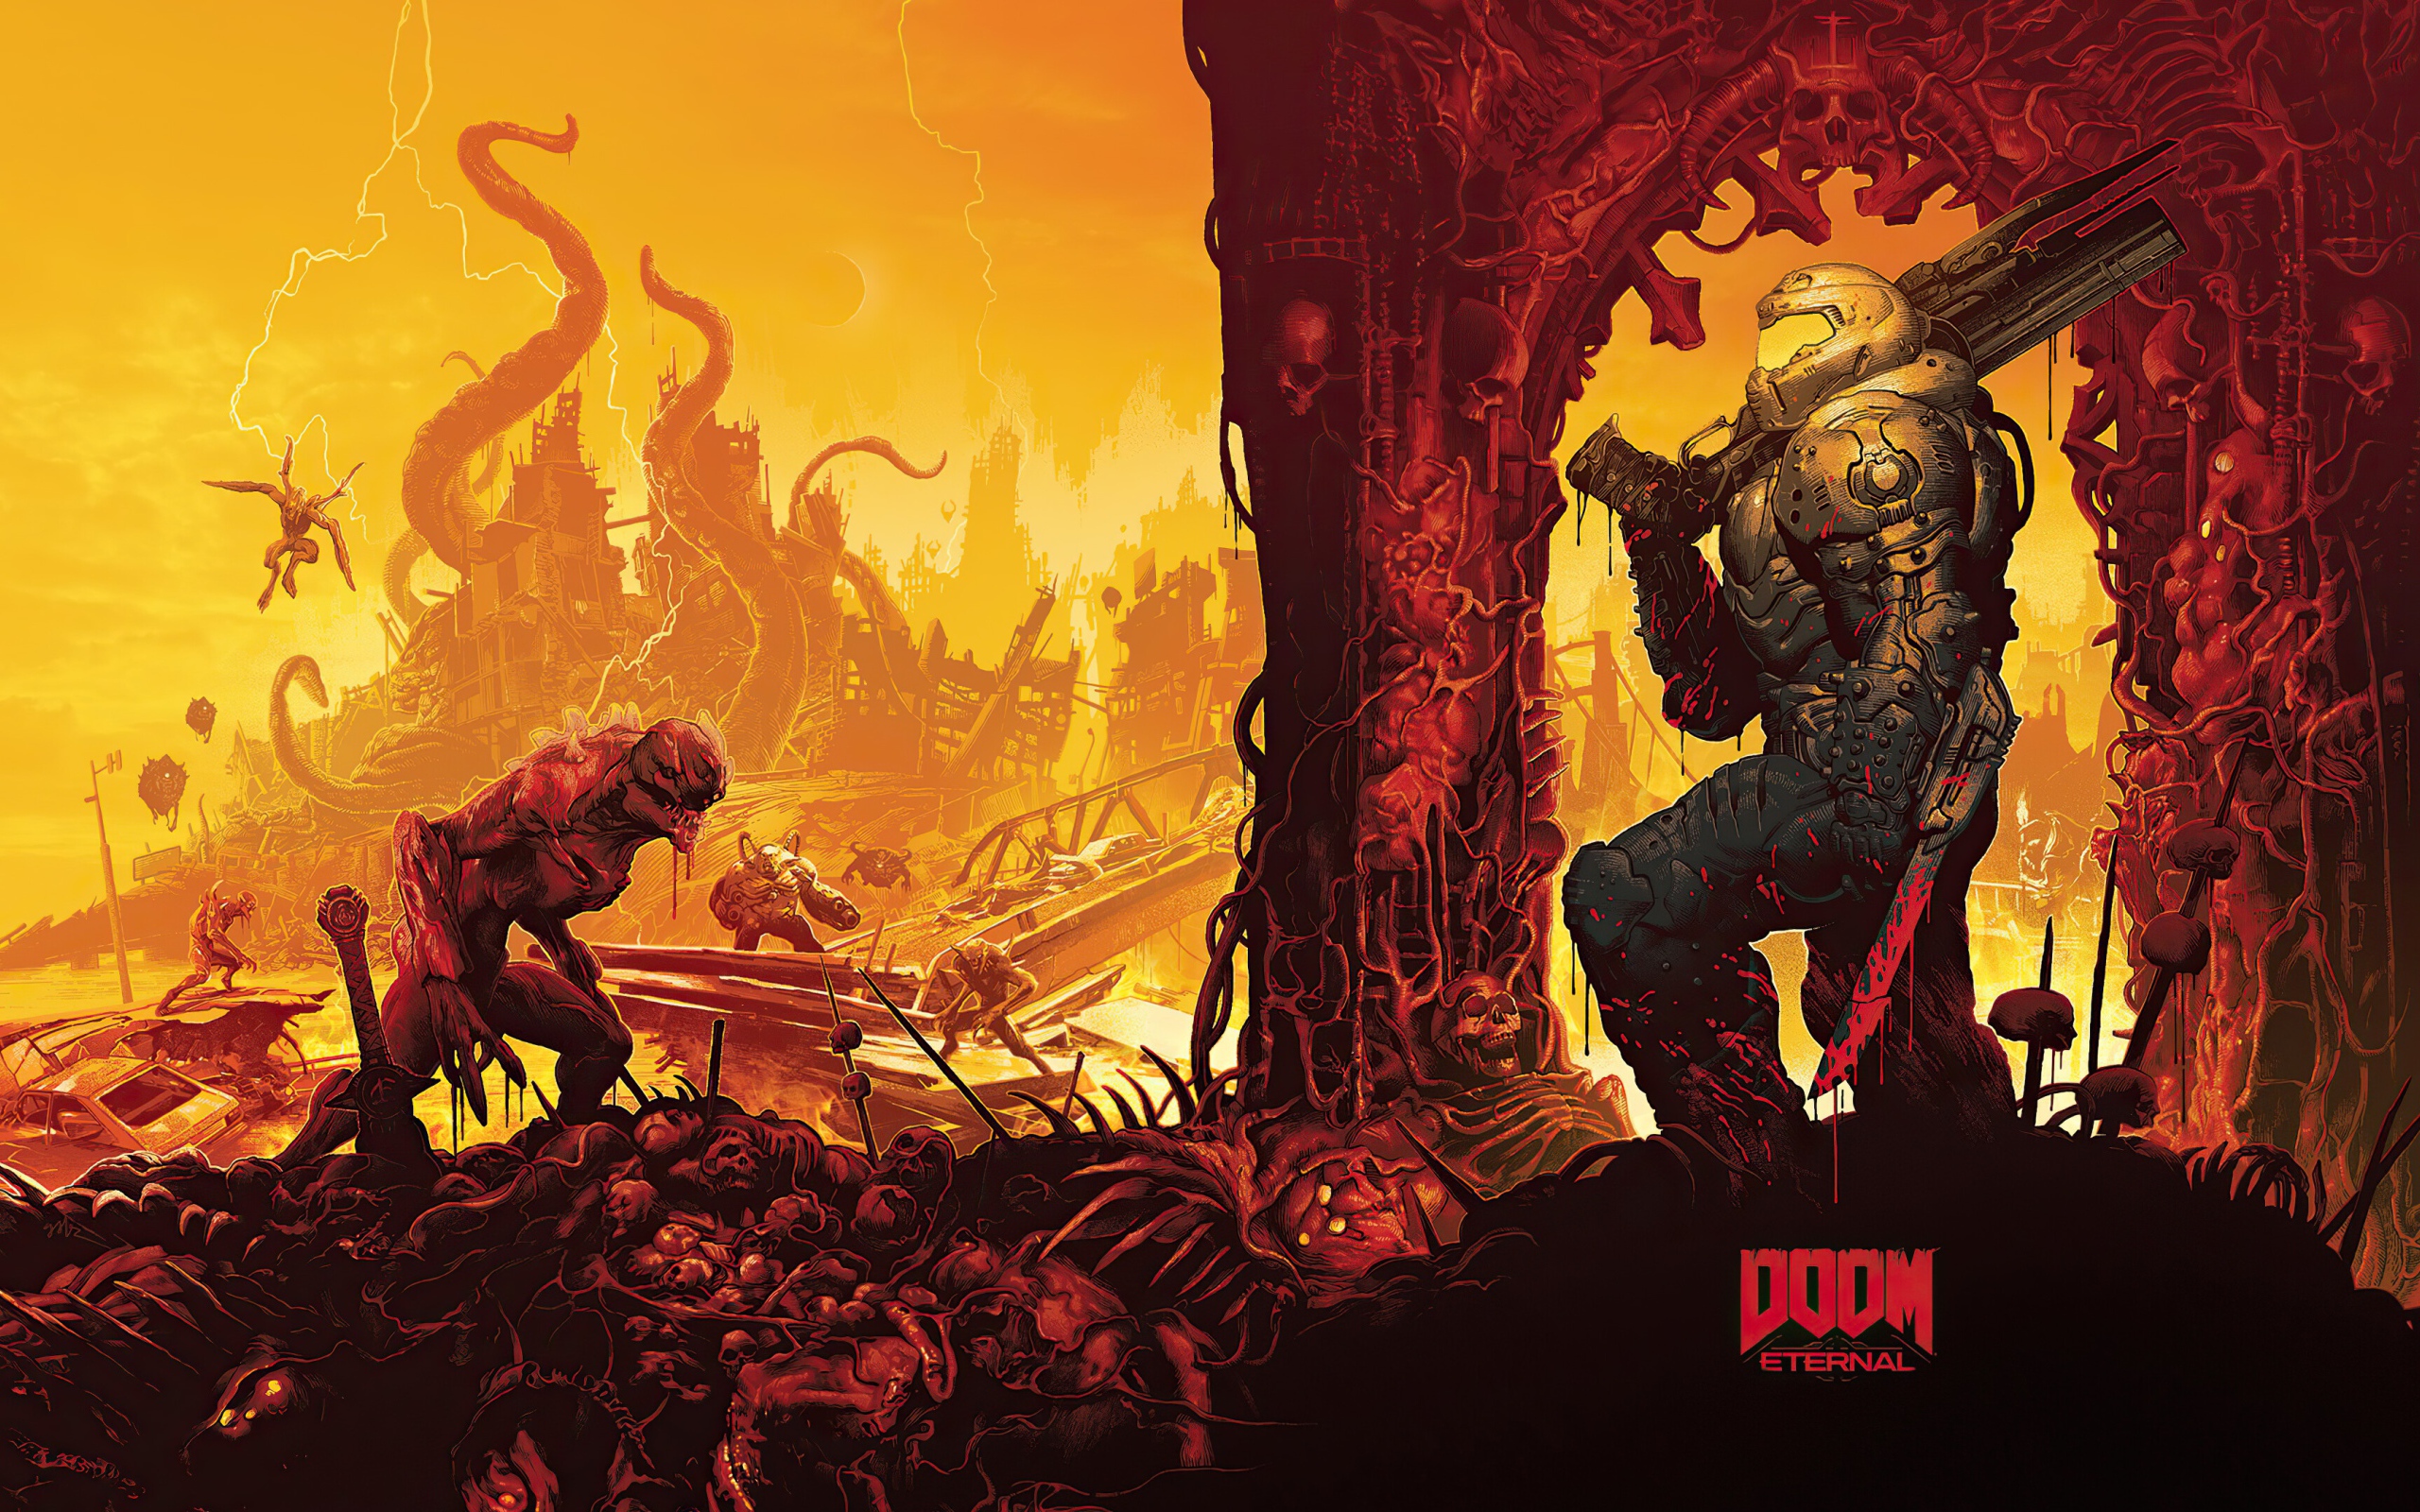 Солдат и монстры из компьютерной игры Doom Eternal, 2020